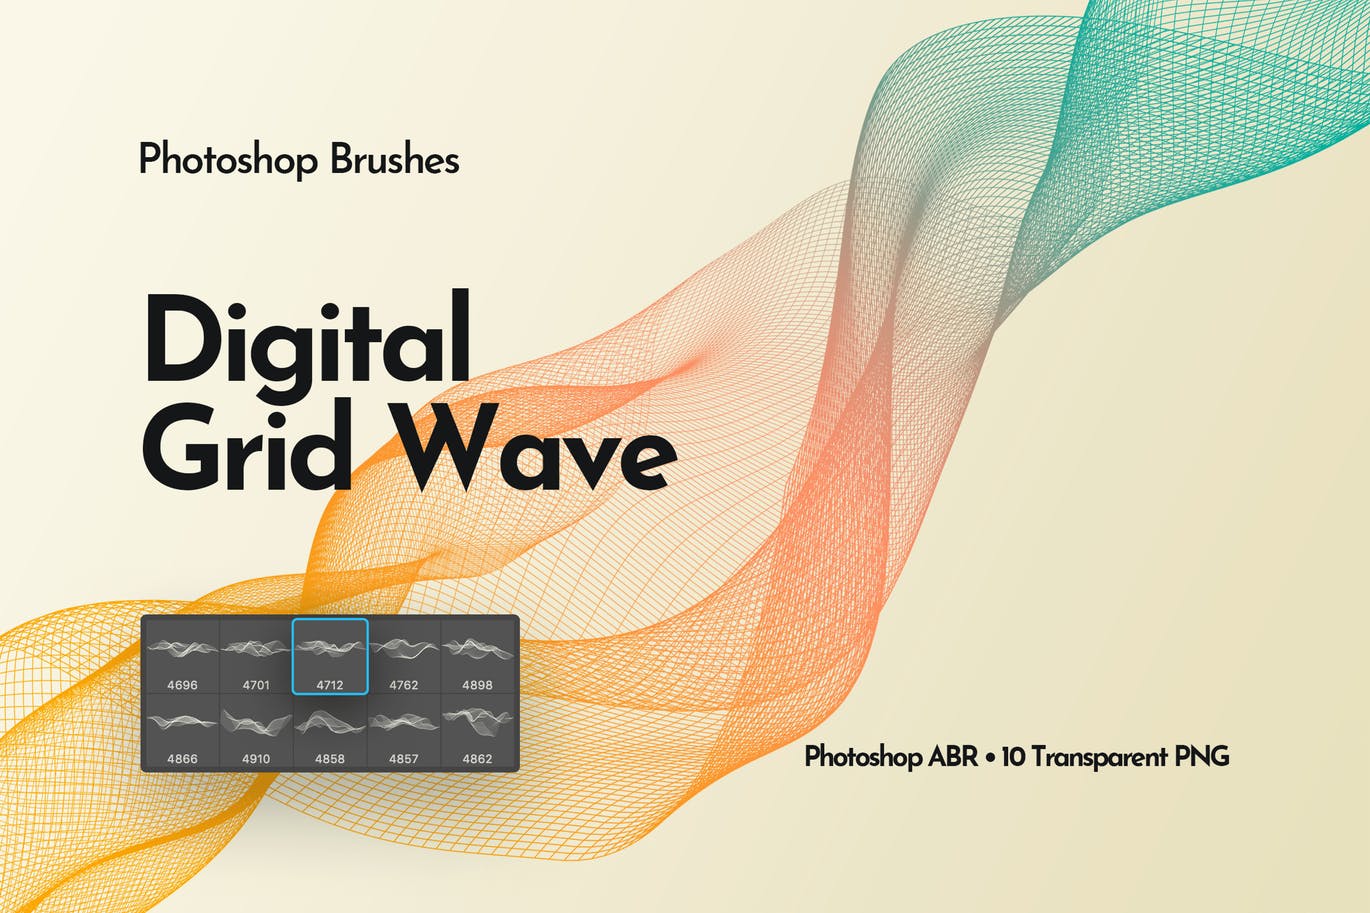 Brushes for Adobe Photoshop